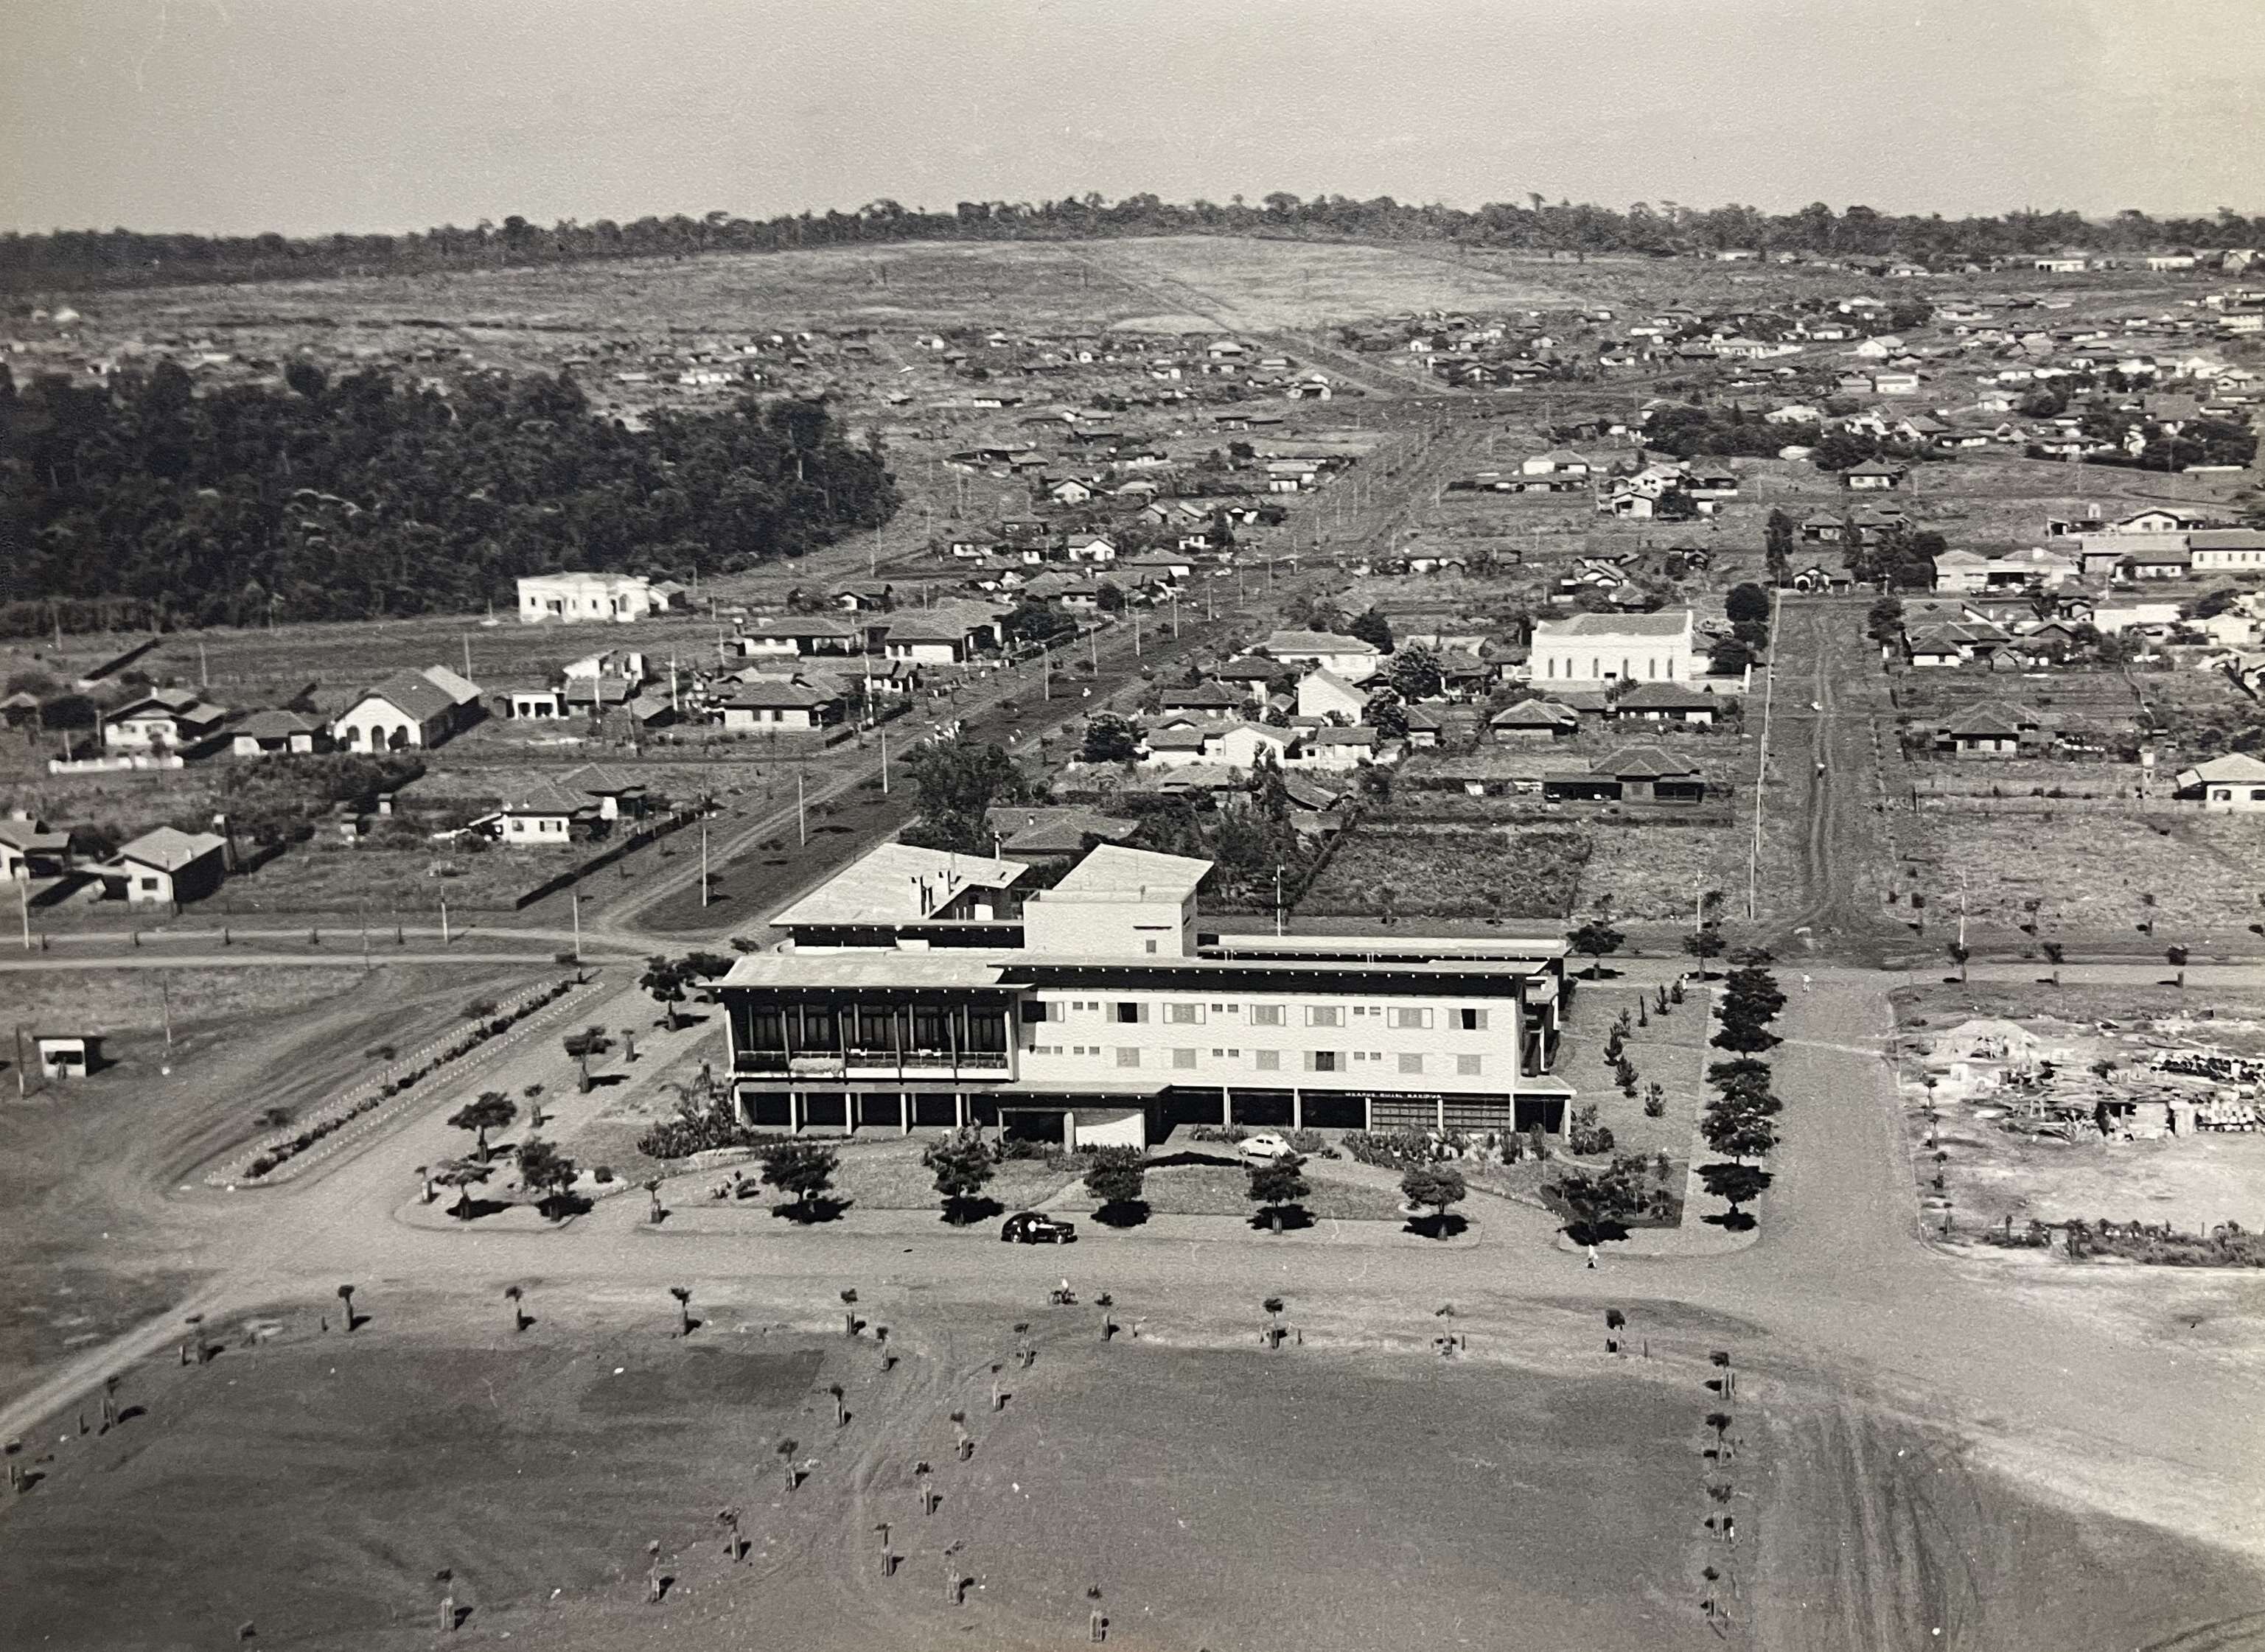 Grande Hotel Maringá e região central - Final dos anos 1950